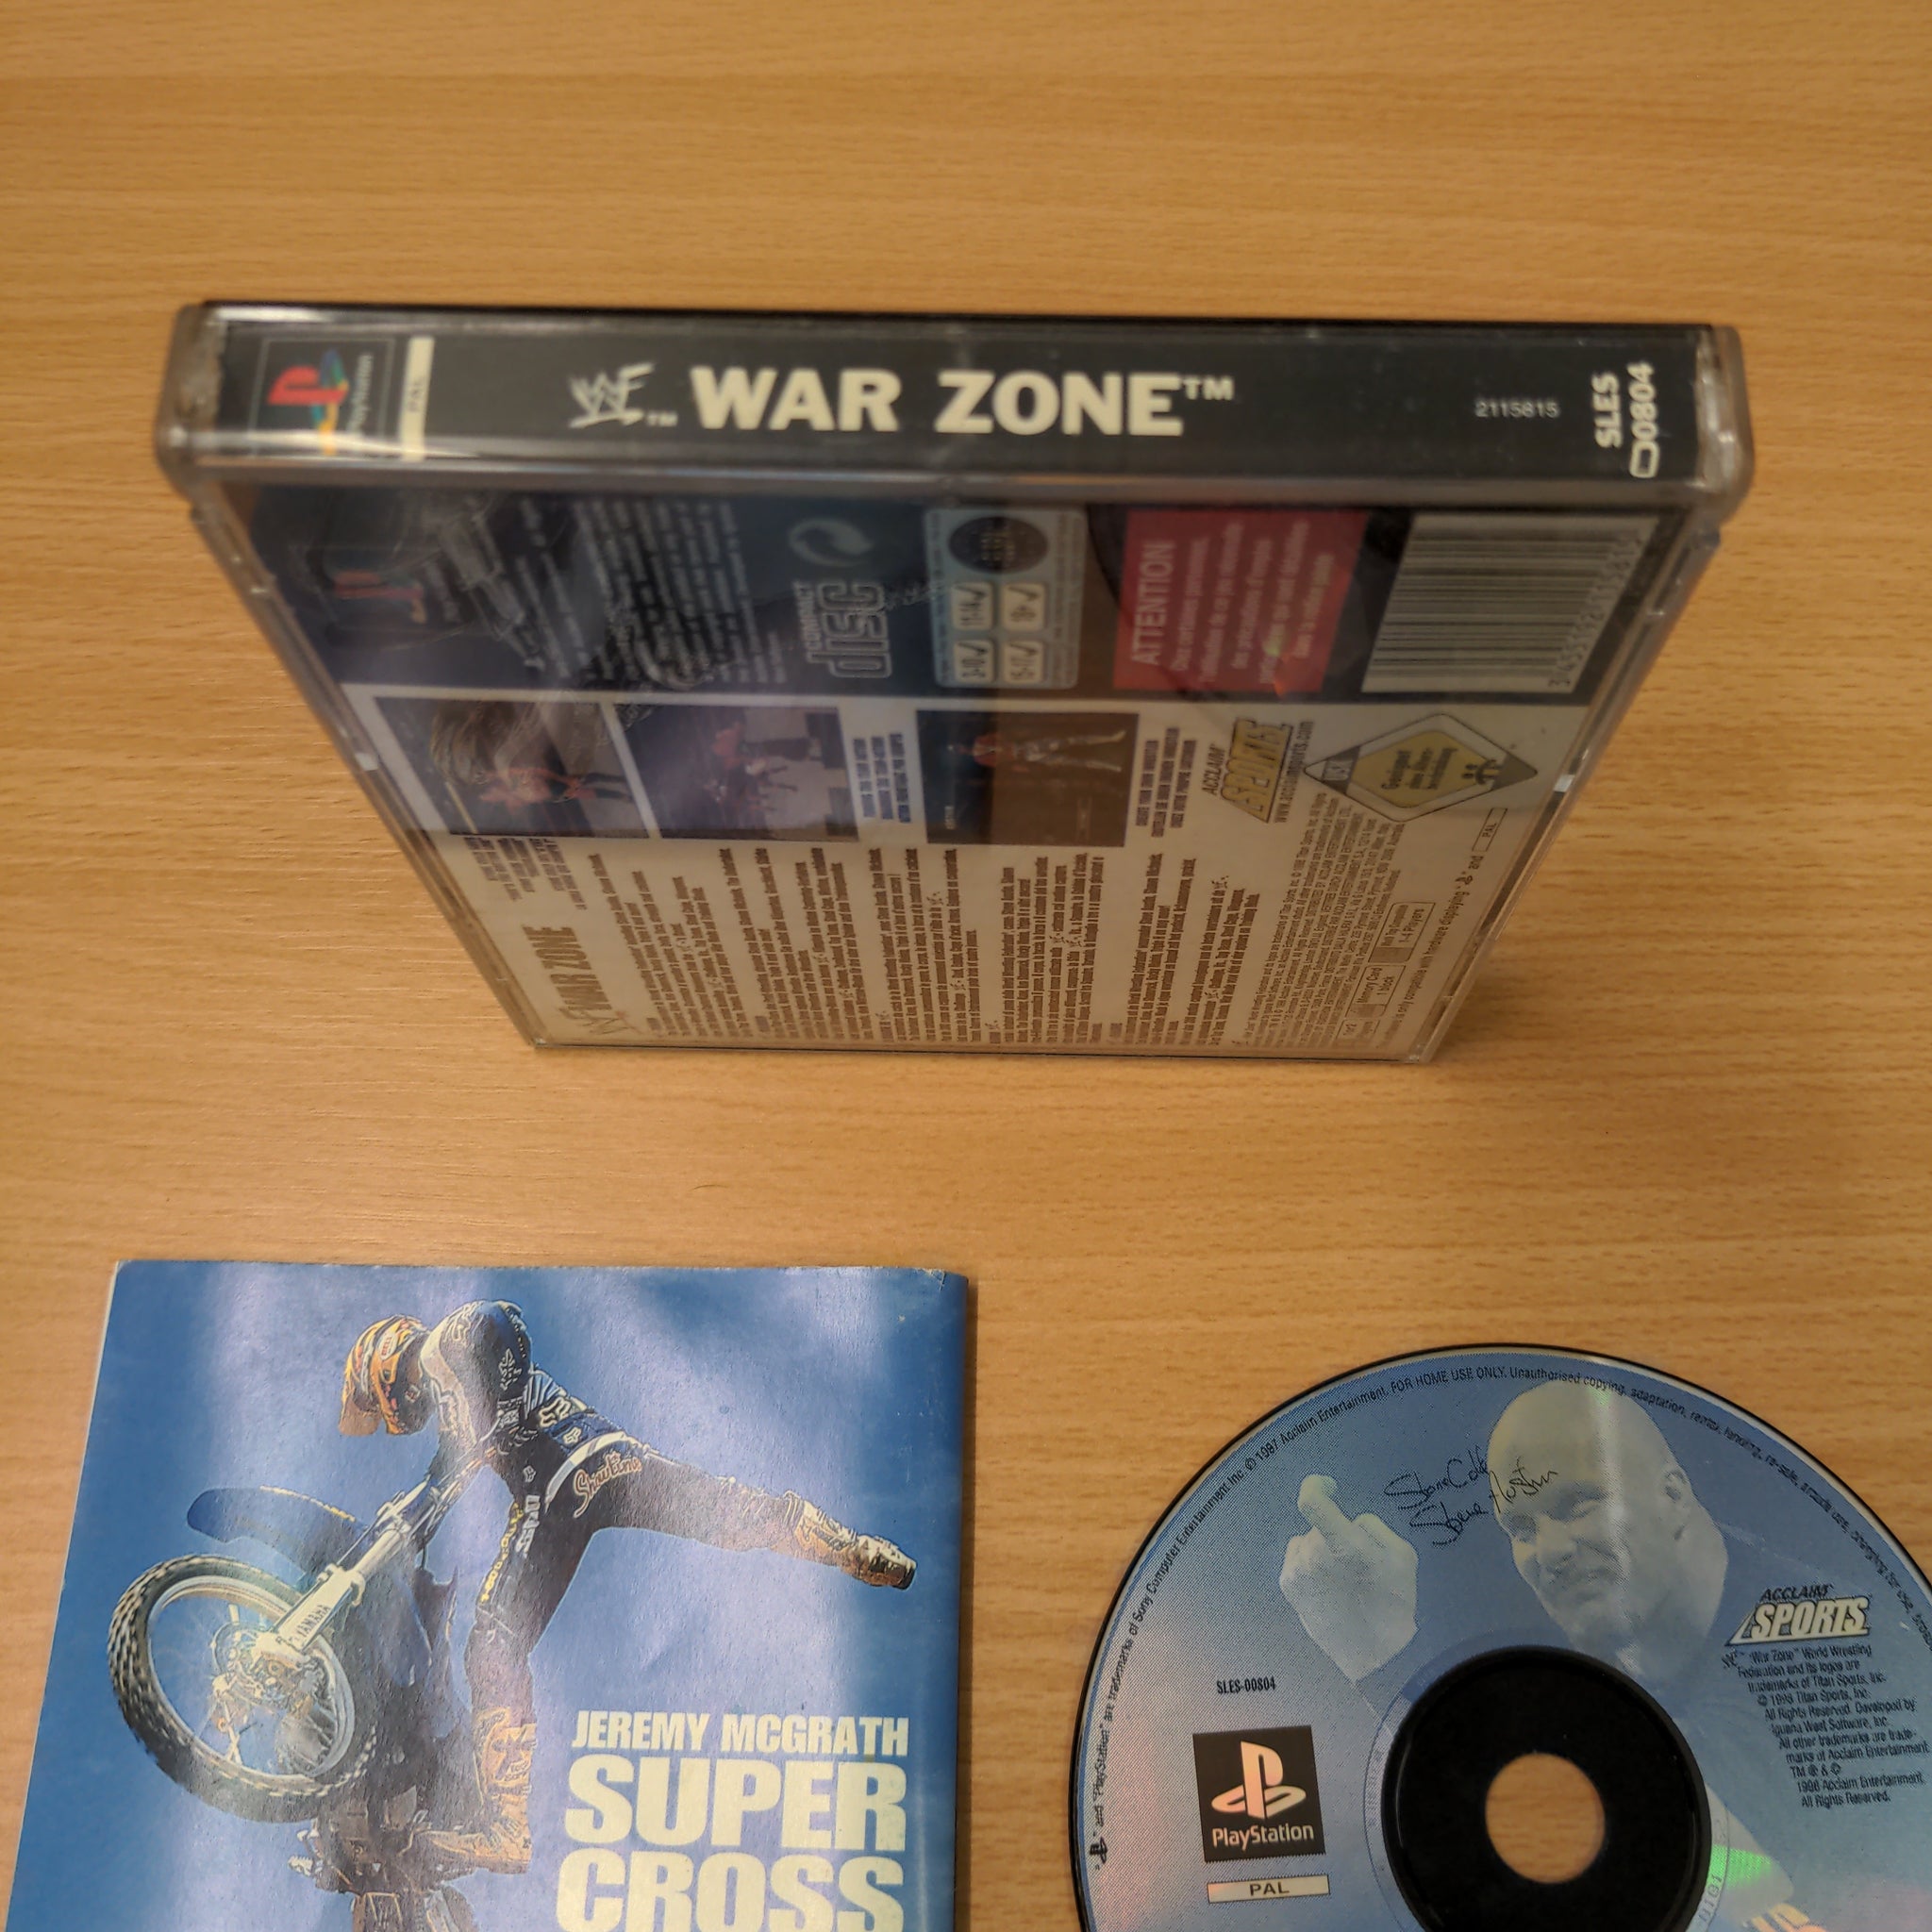 WWF War Zone Sony PS1 game